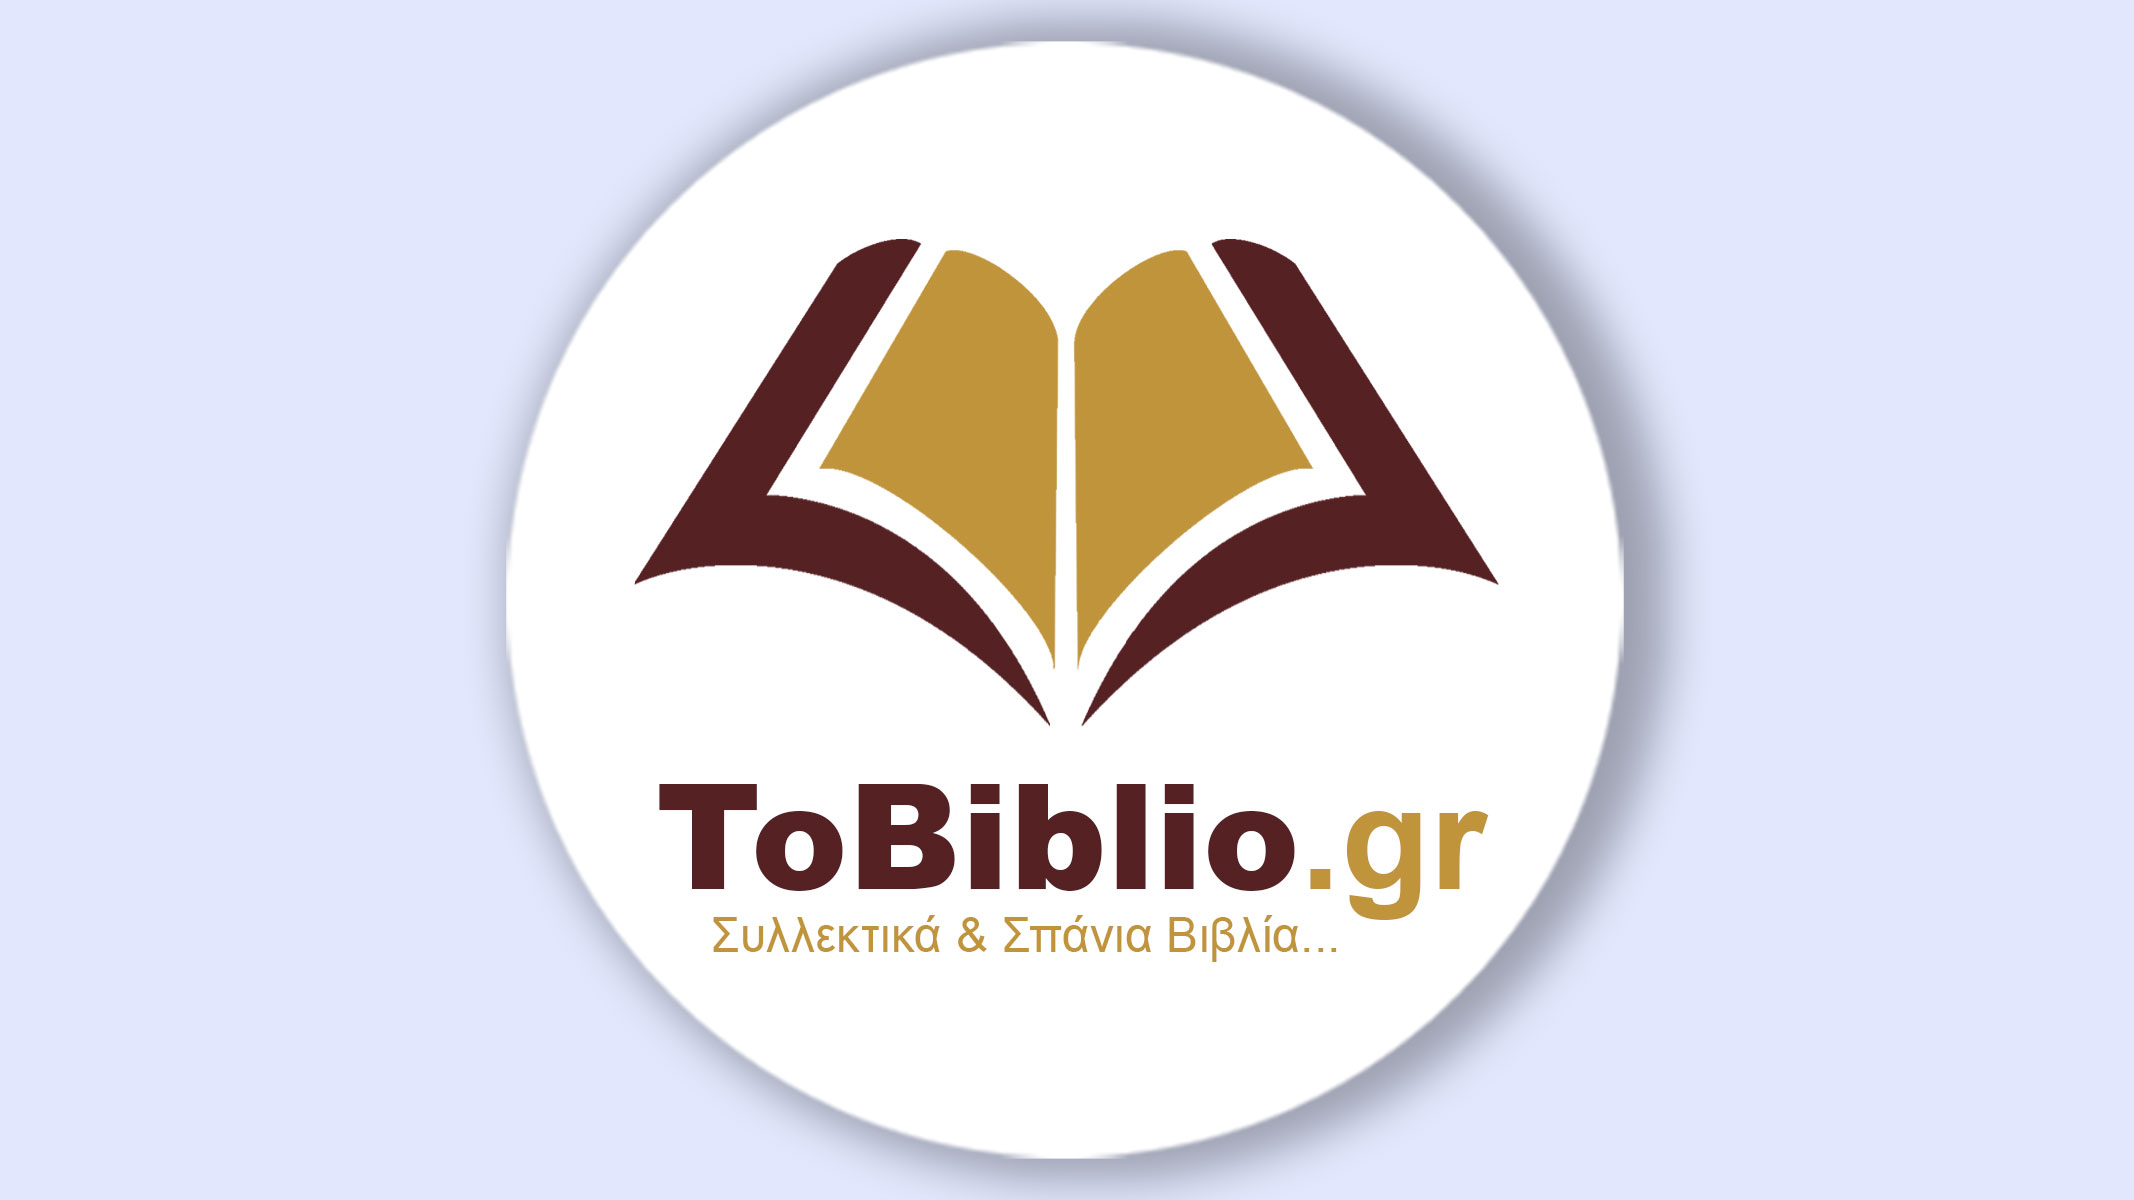 tobiblio.gr